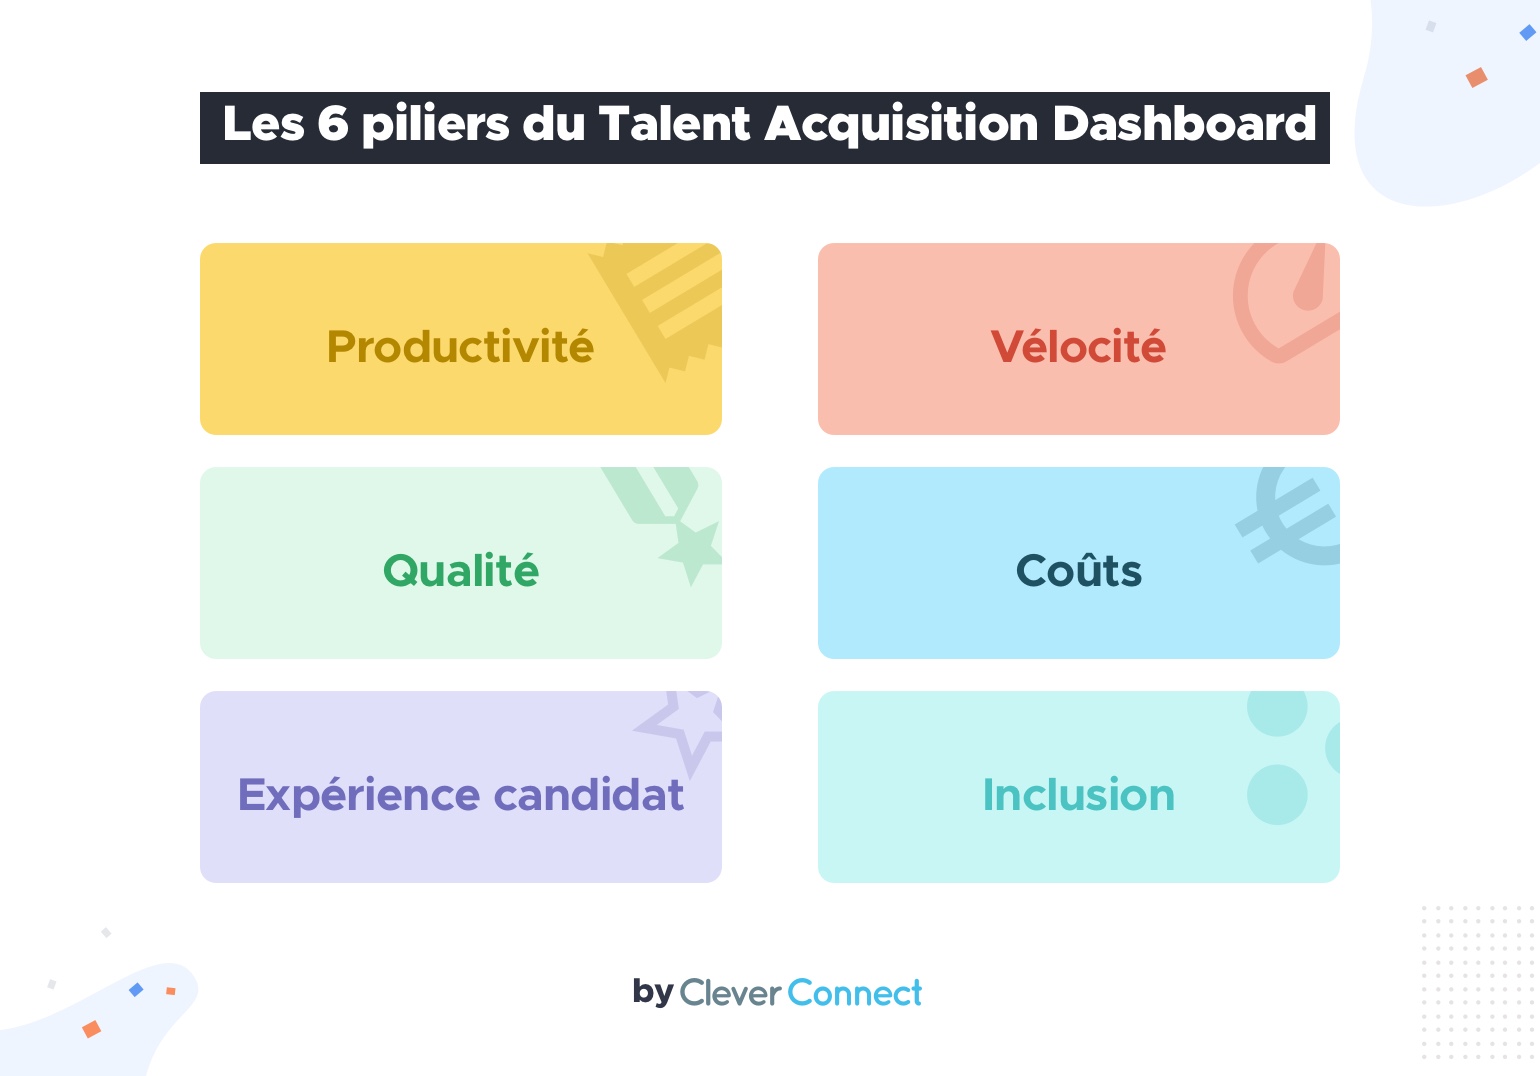 Les 6 piliers du Talent Acquisition Dashboard